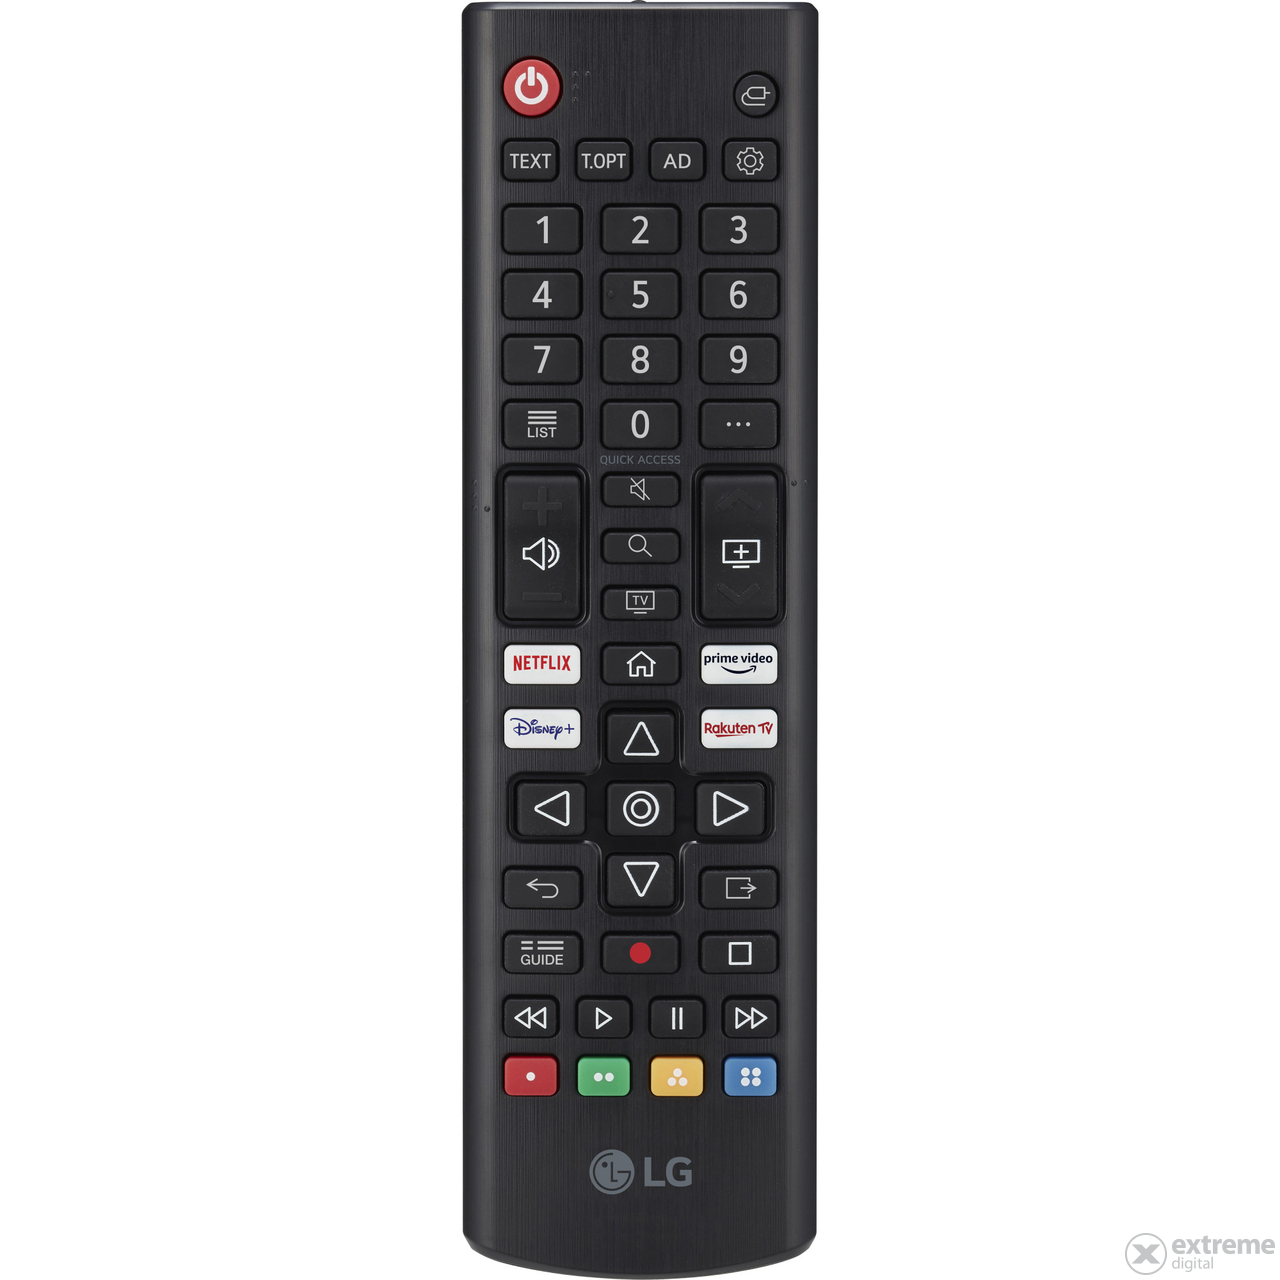 LG 50UP76703LB 4K UHD LED HDR webOS SMART televizor